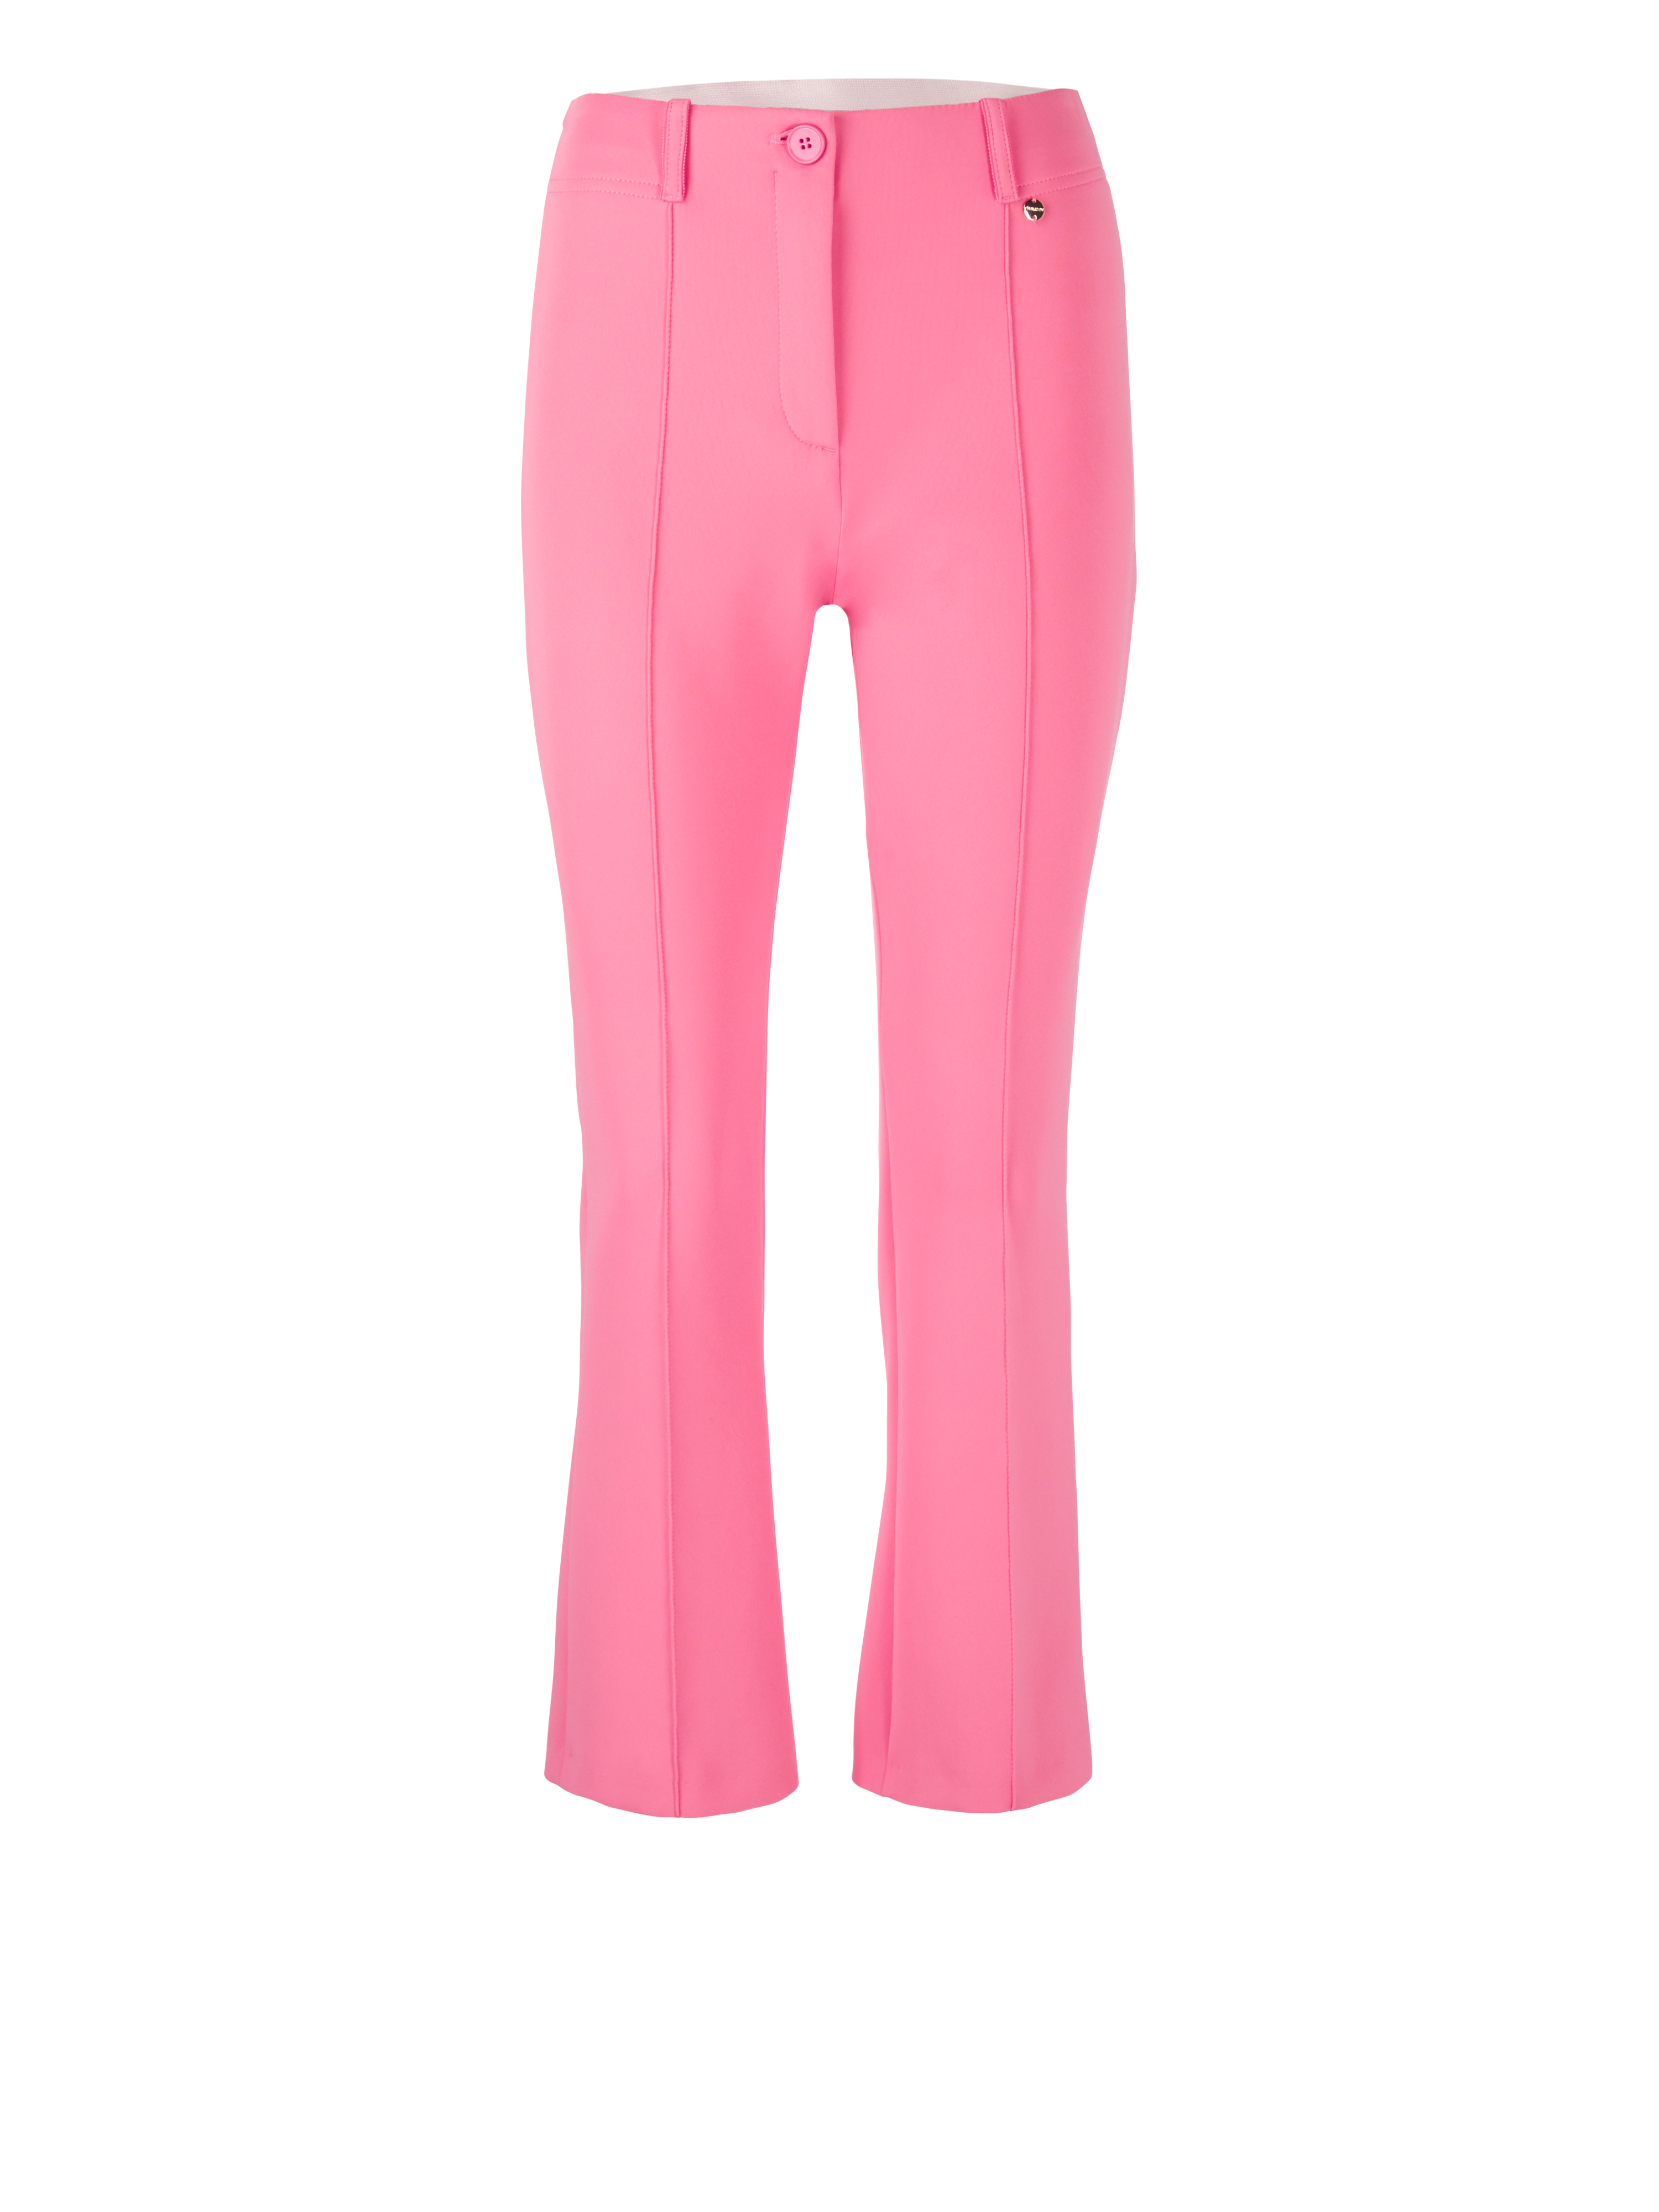 MARC CAIN UC 81.21 J23 Klassische Hose mit Bügelfalte bright pink